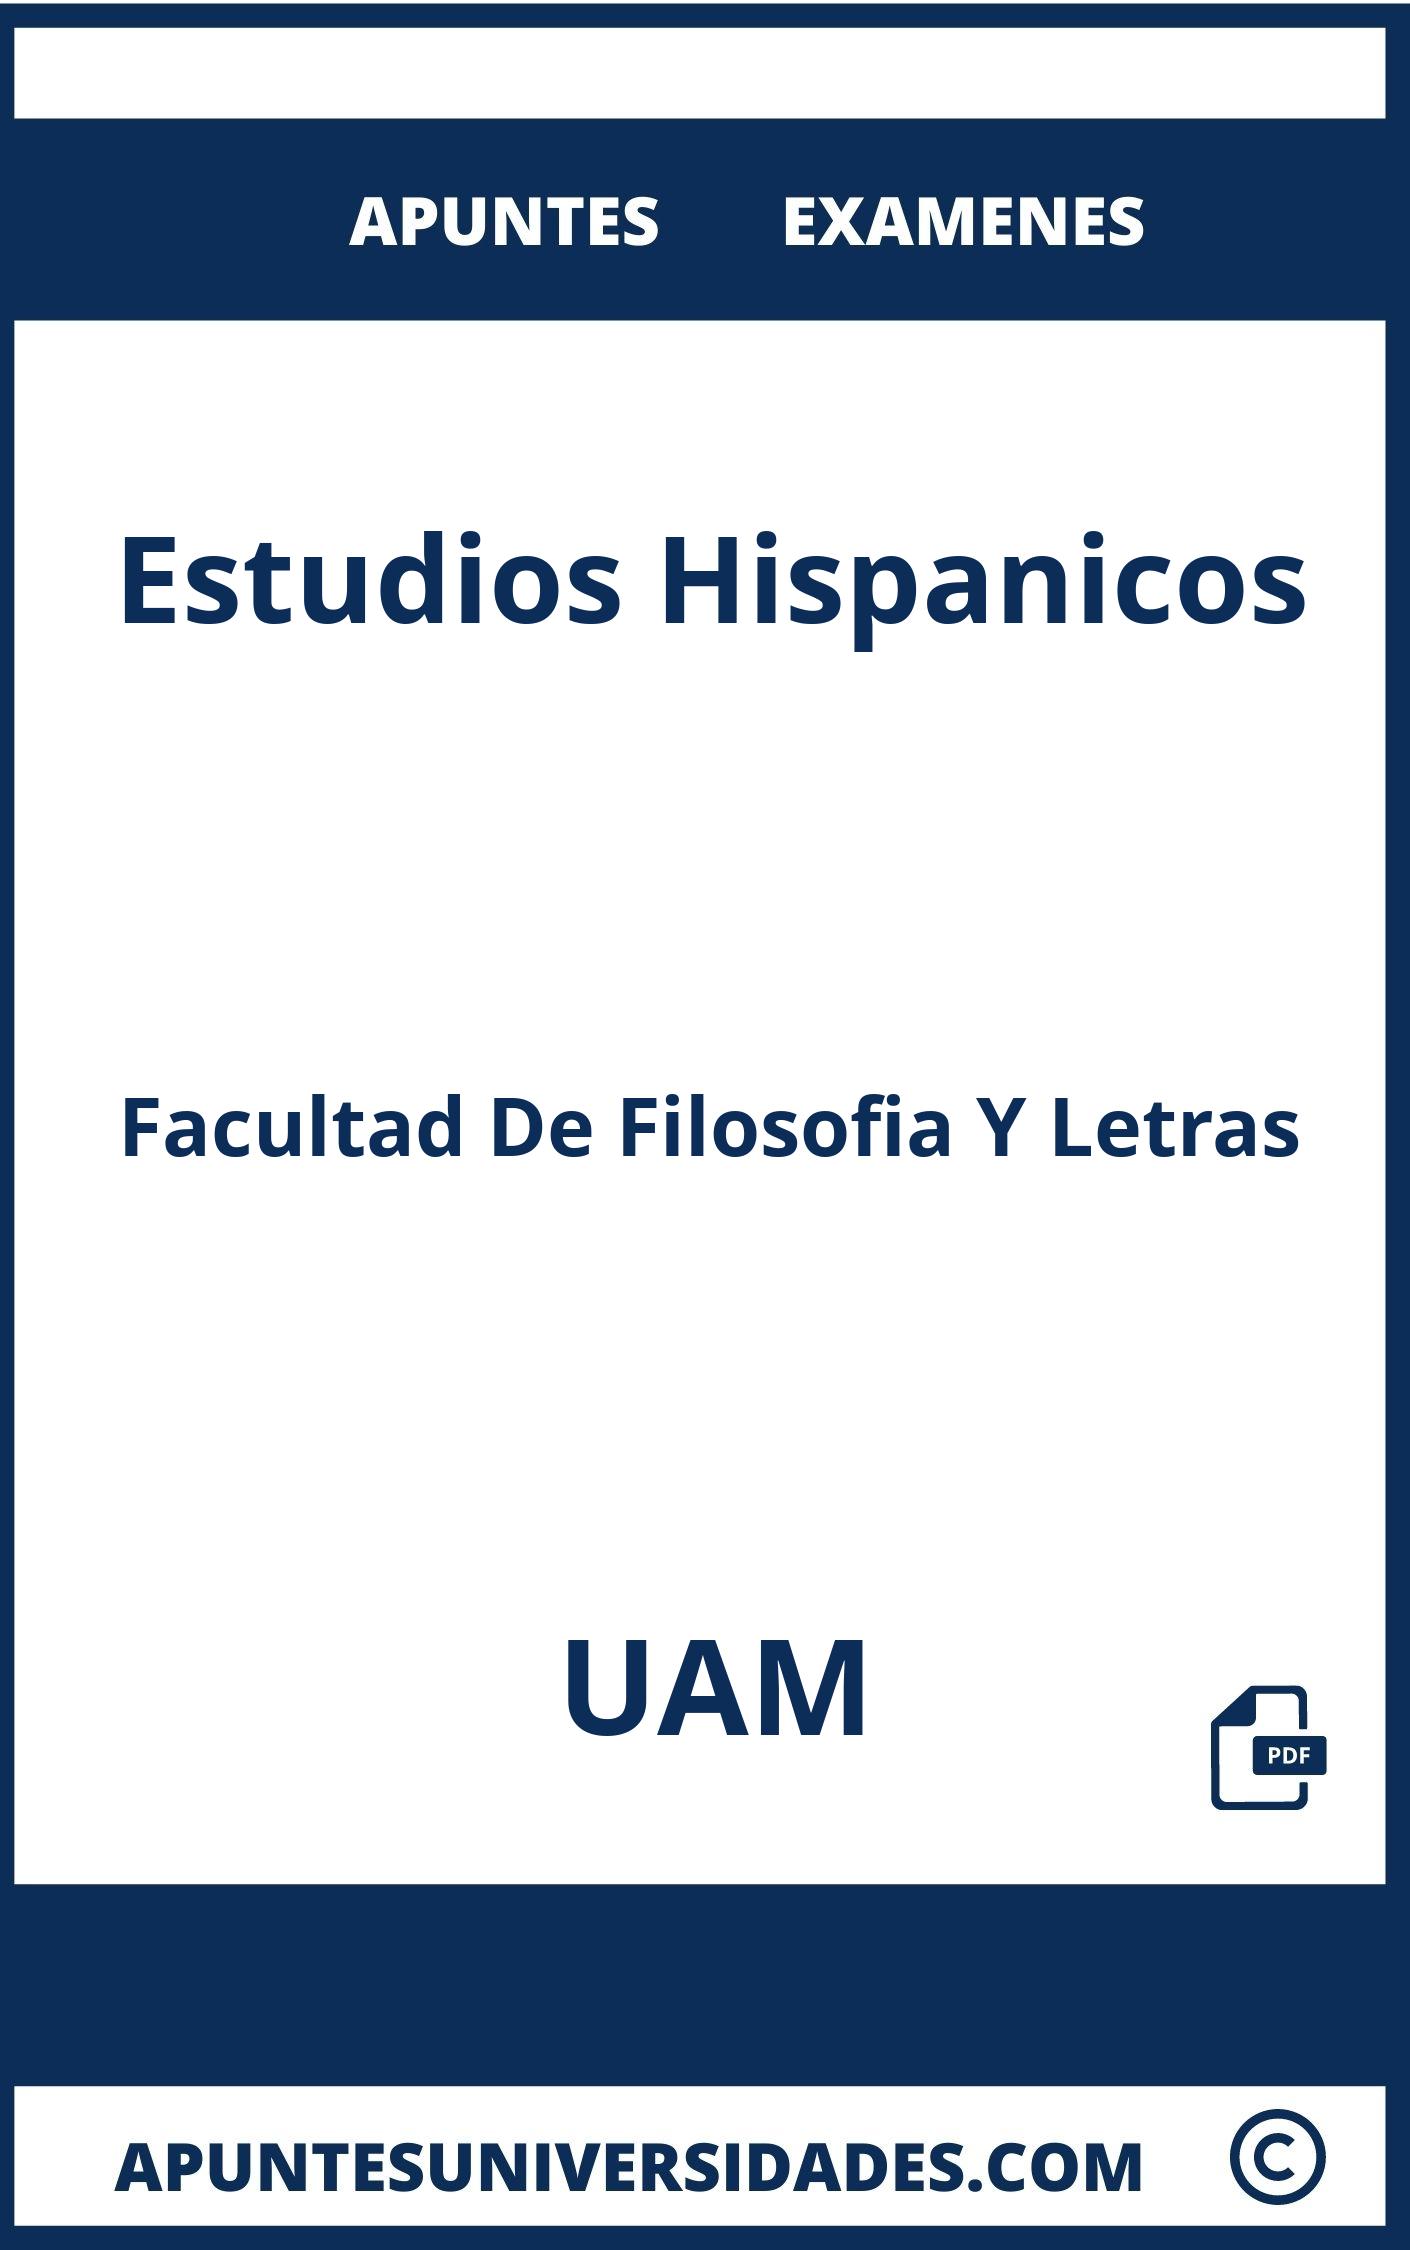 Examenes Apuntes Estudios Hispanicos UAM